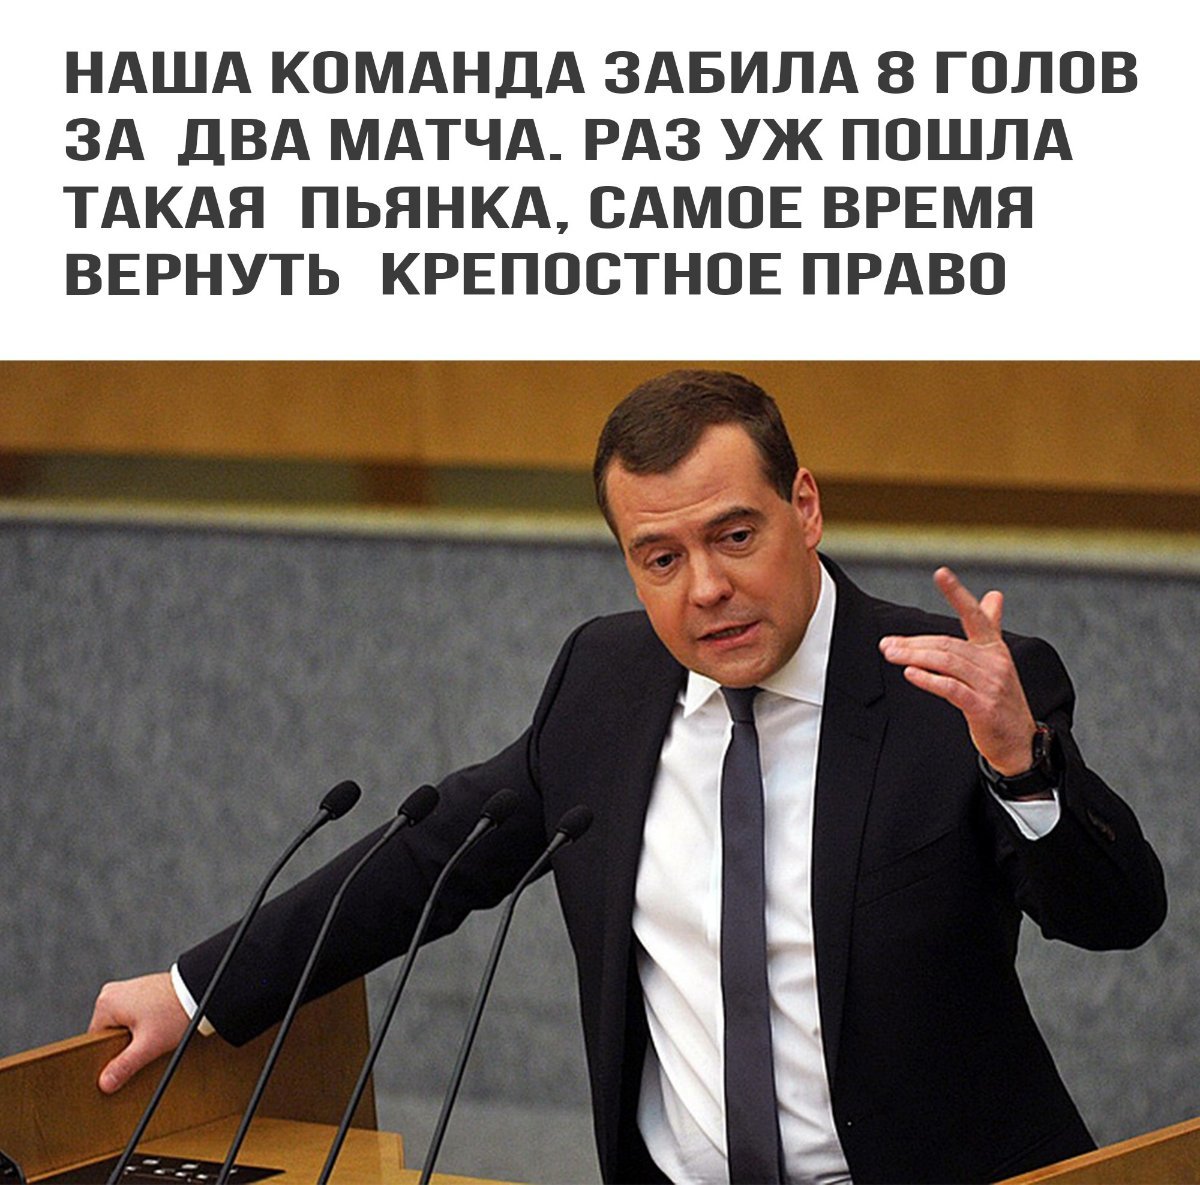 Шутки медведева. Шутки про Медведева. Анекдоты про Медведева. Медведев шутки. Медведев приколы.